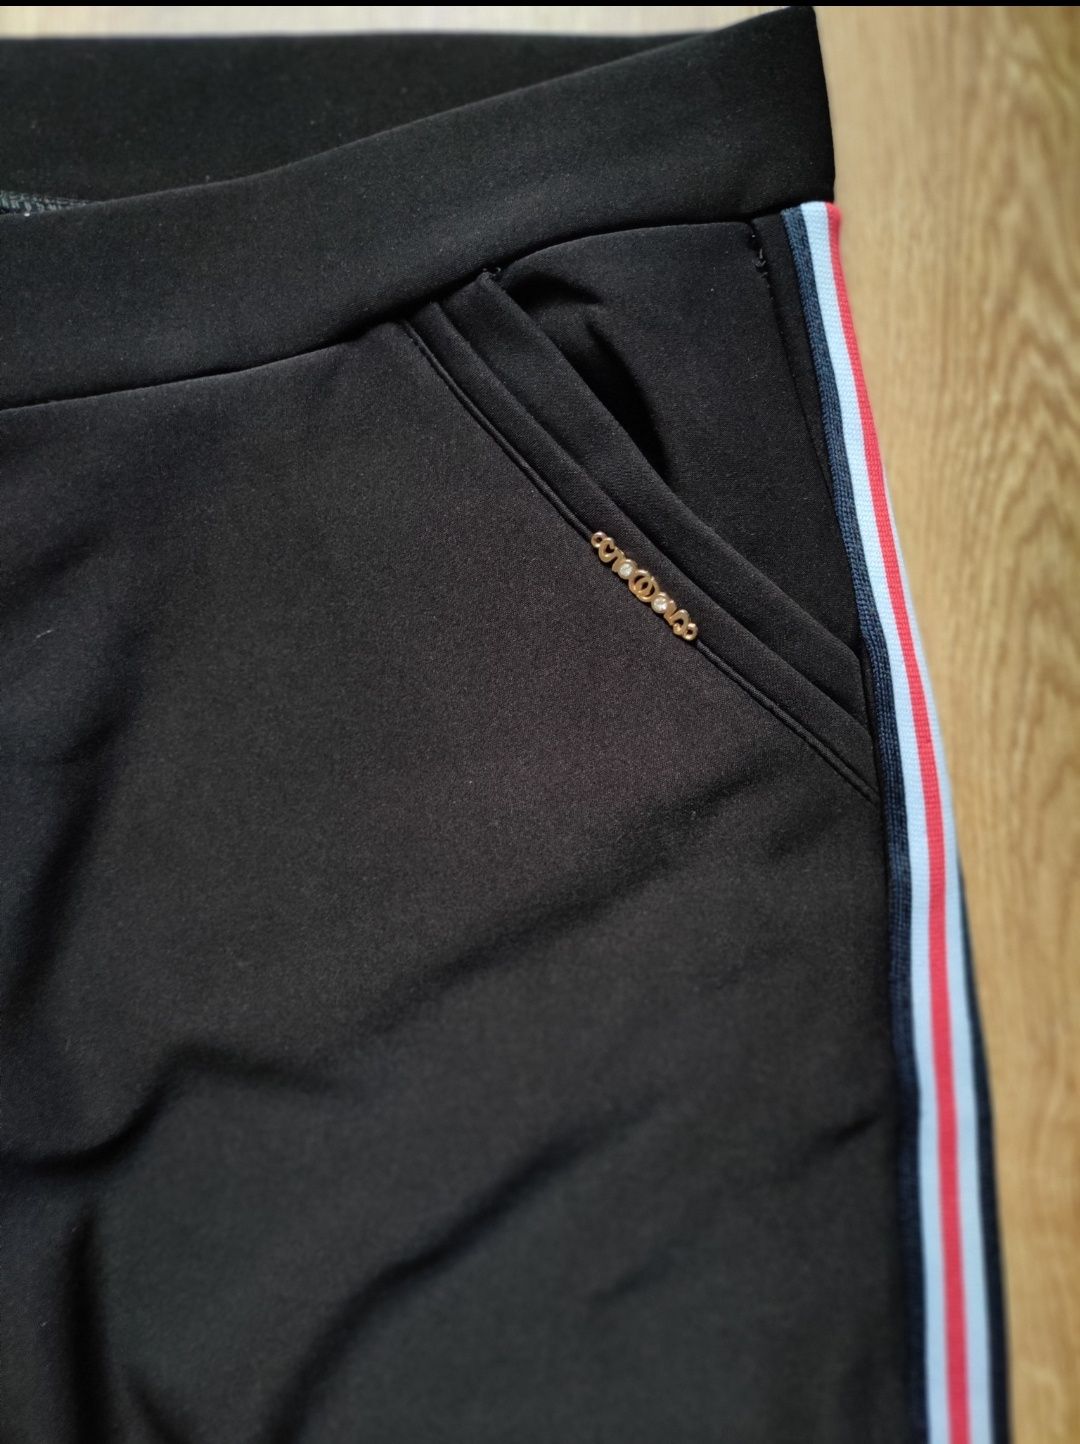 Czarne spodnie dresowe 4-5xl firmy Butik